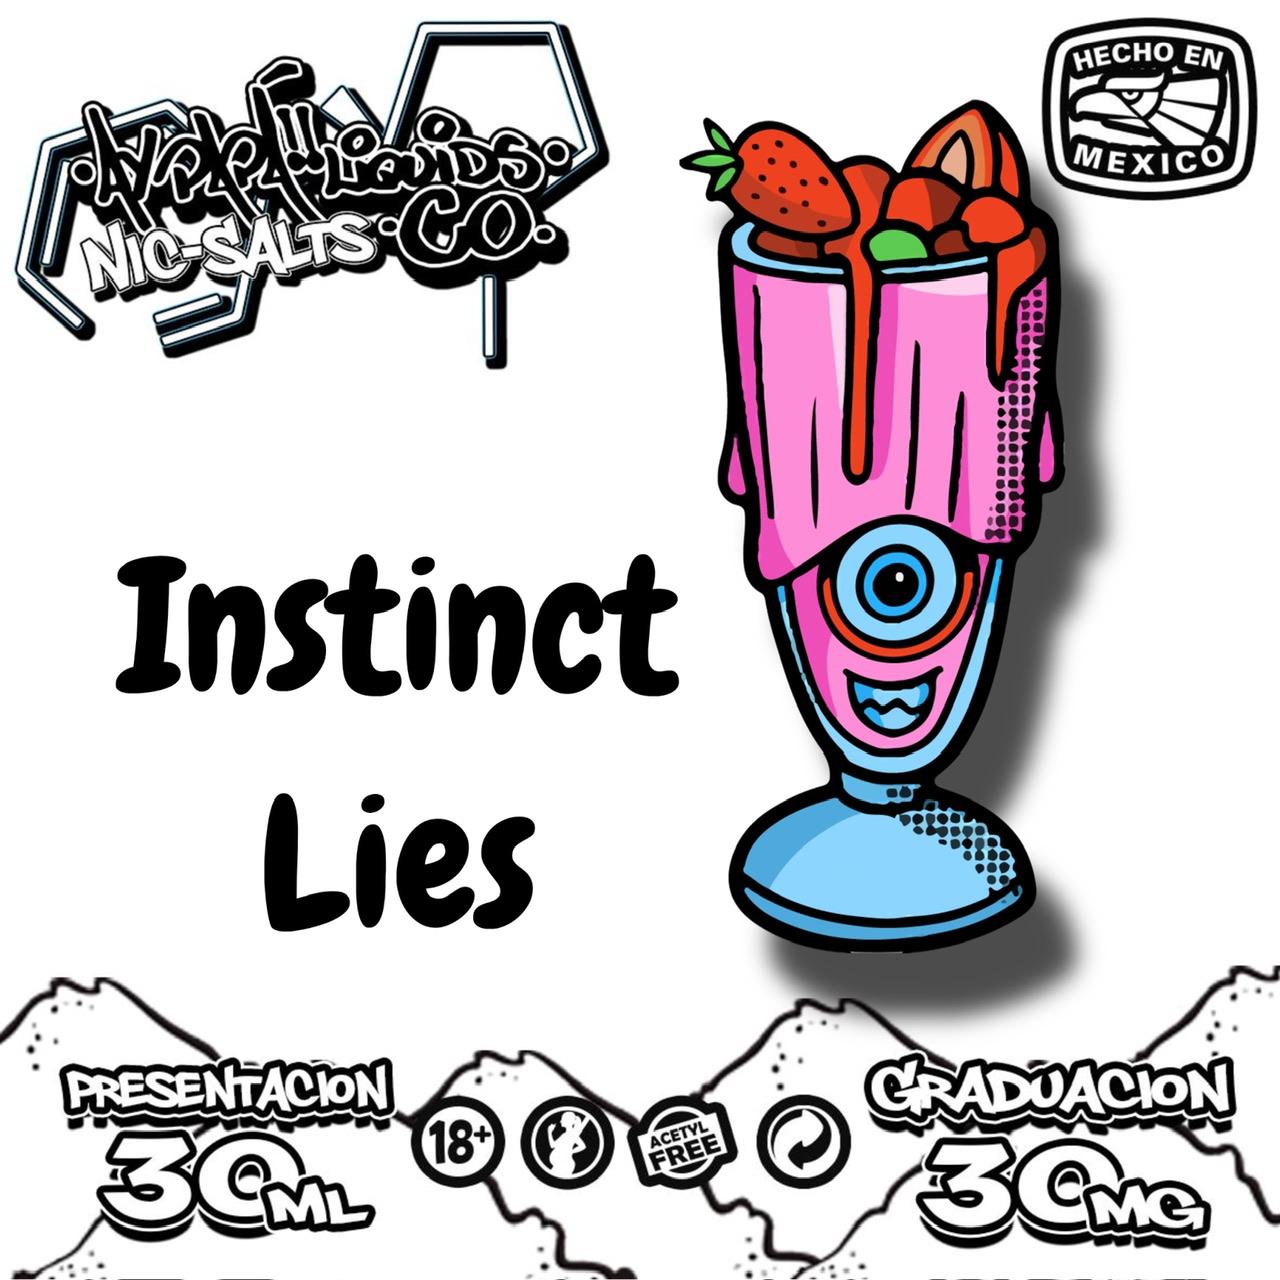 Instinct Lies Nicsalt 